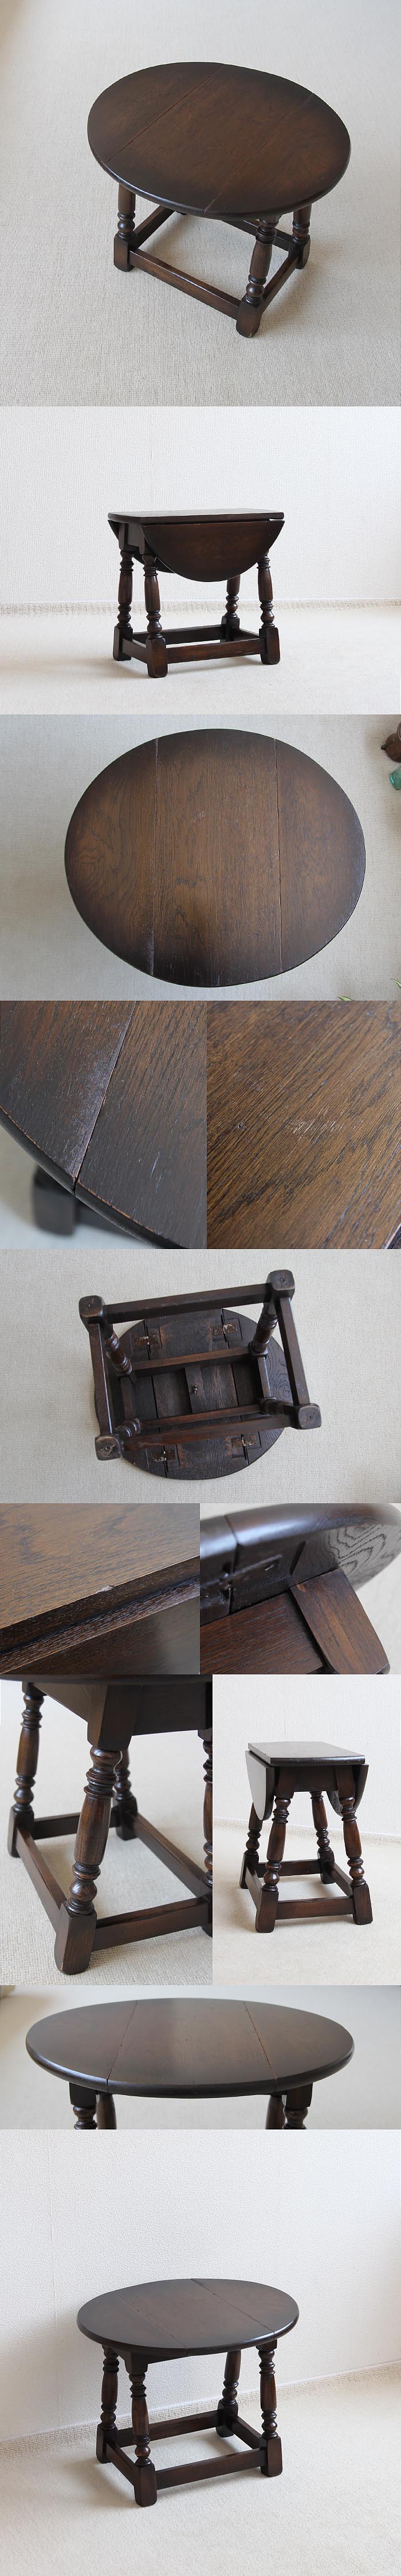 イギリス アンティーク バタフライテーブル オーク材 英国 家具「ドロップリーフテーブル」V-432